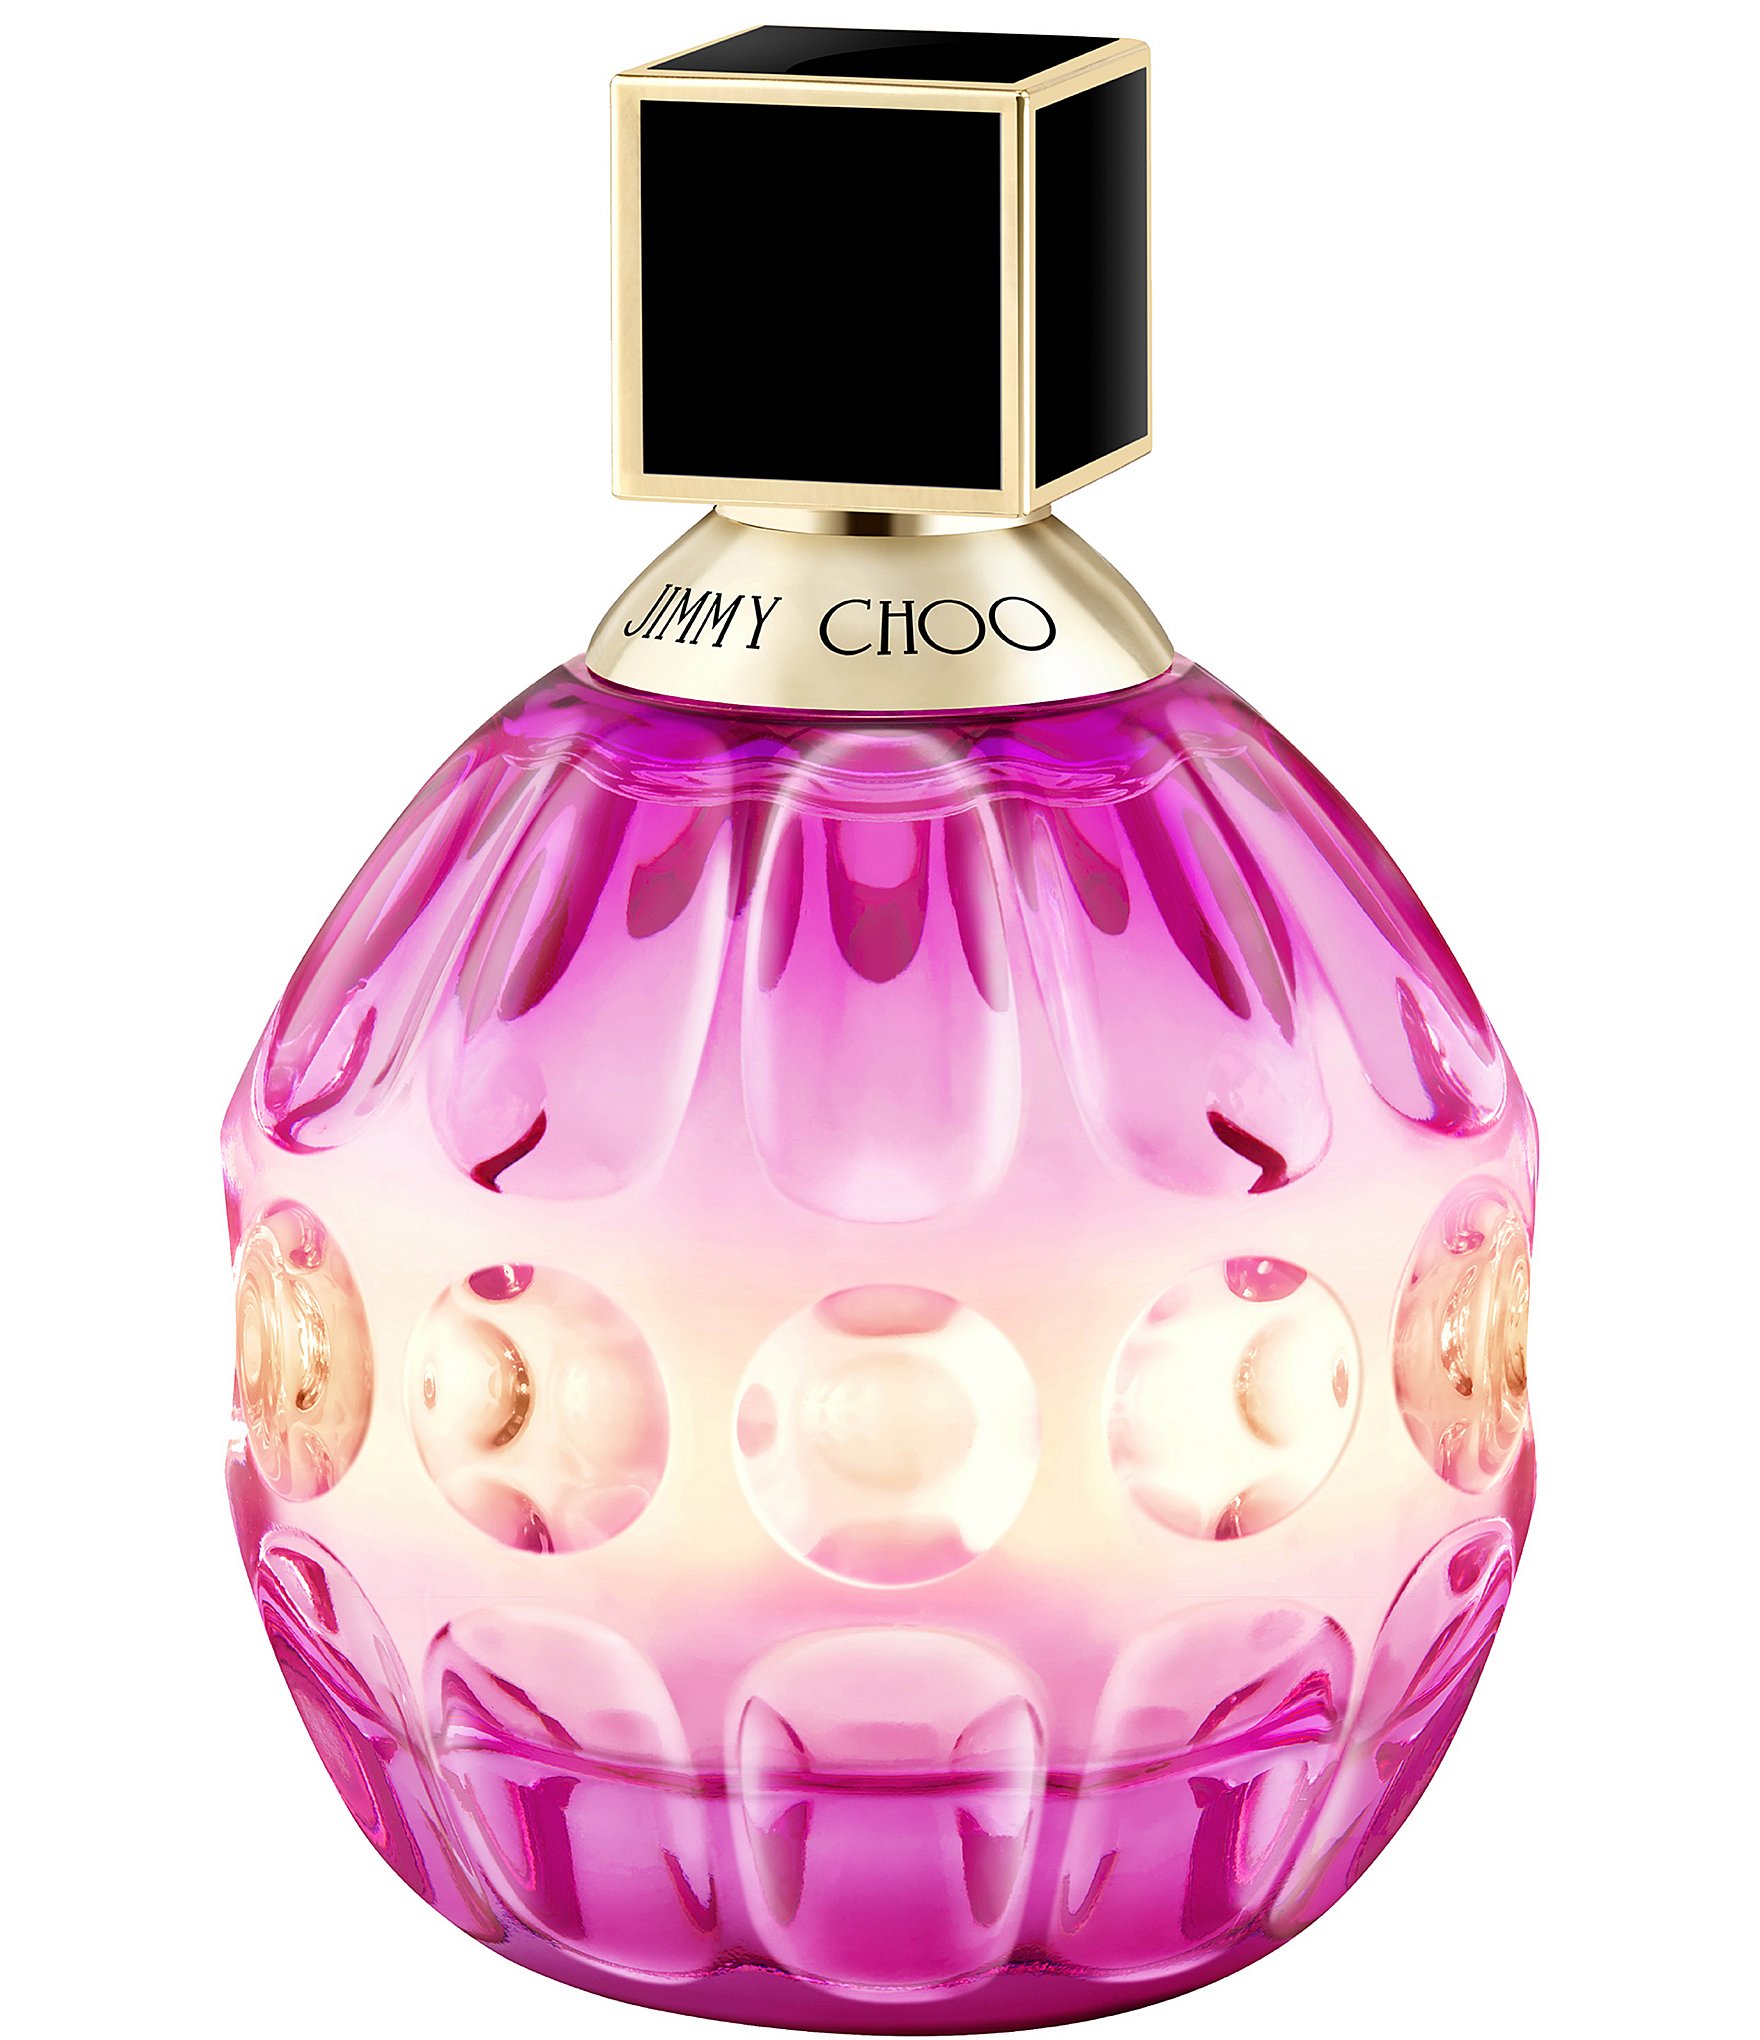 Jimmy Choo Rose Passion Eau de Parfum | Dillard's